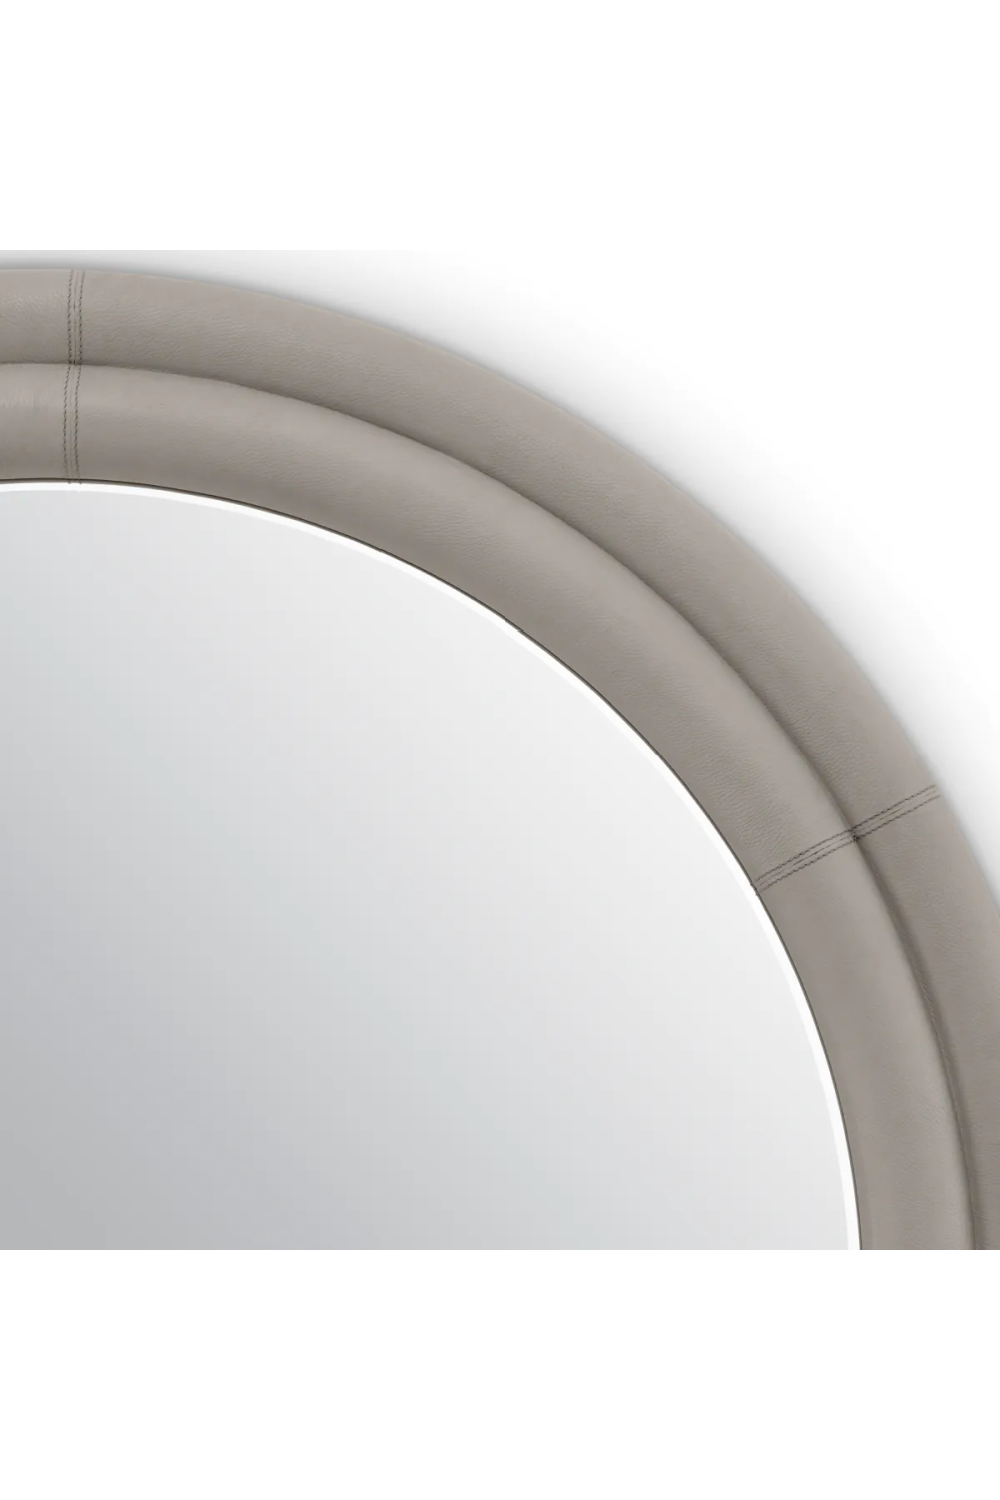 Gray Leather Round Mirror | Eichholtz Bastioni | Oroa.com